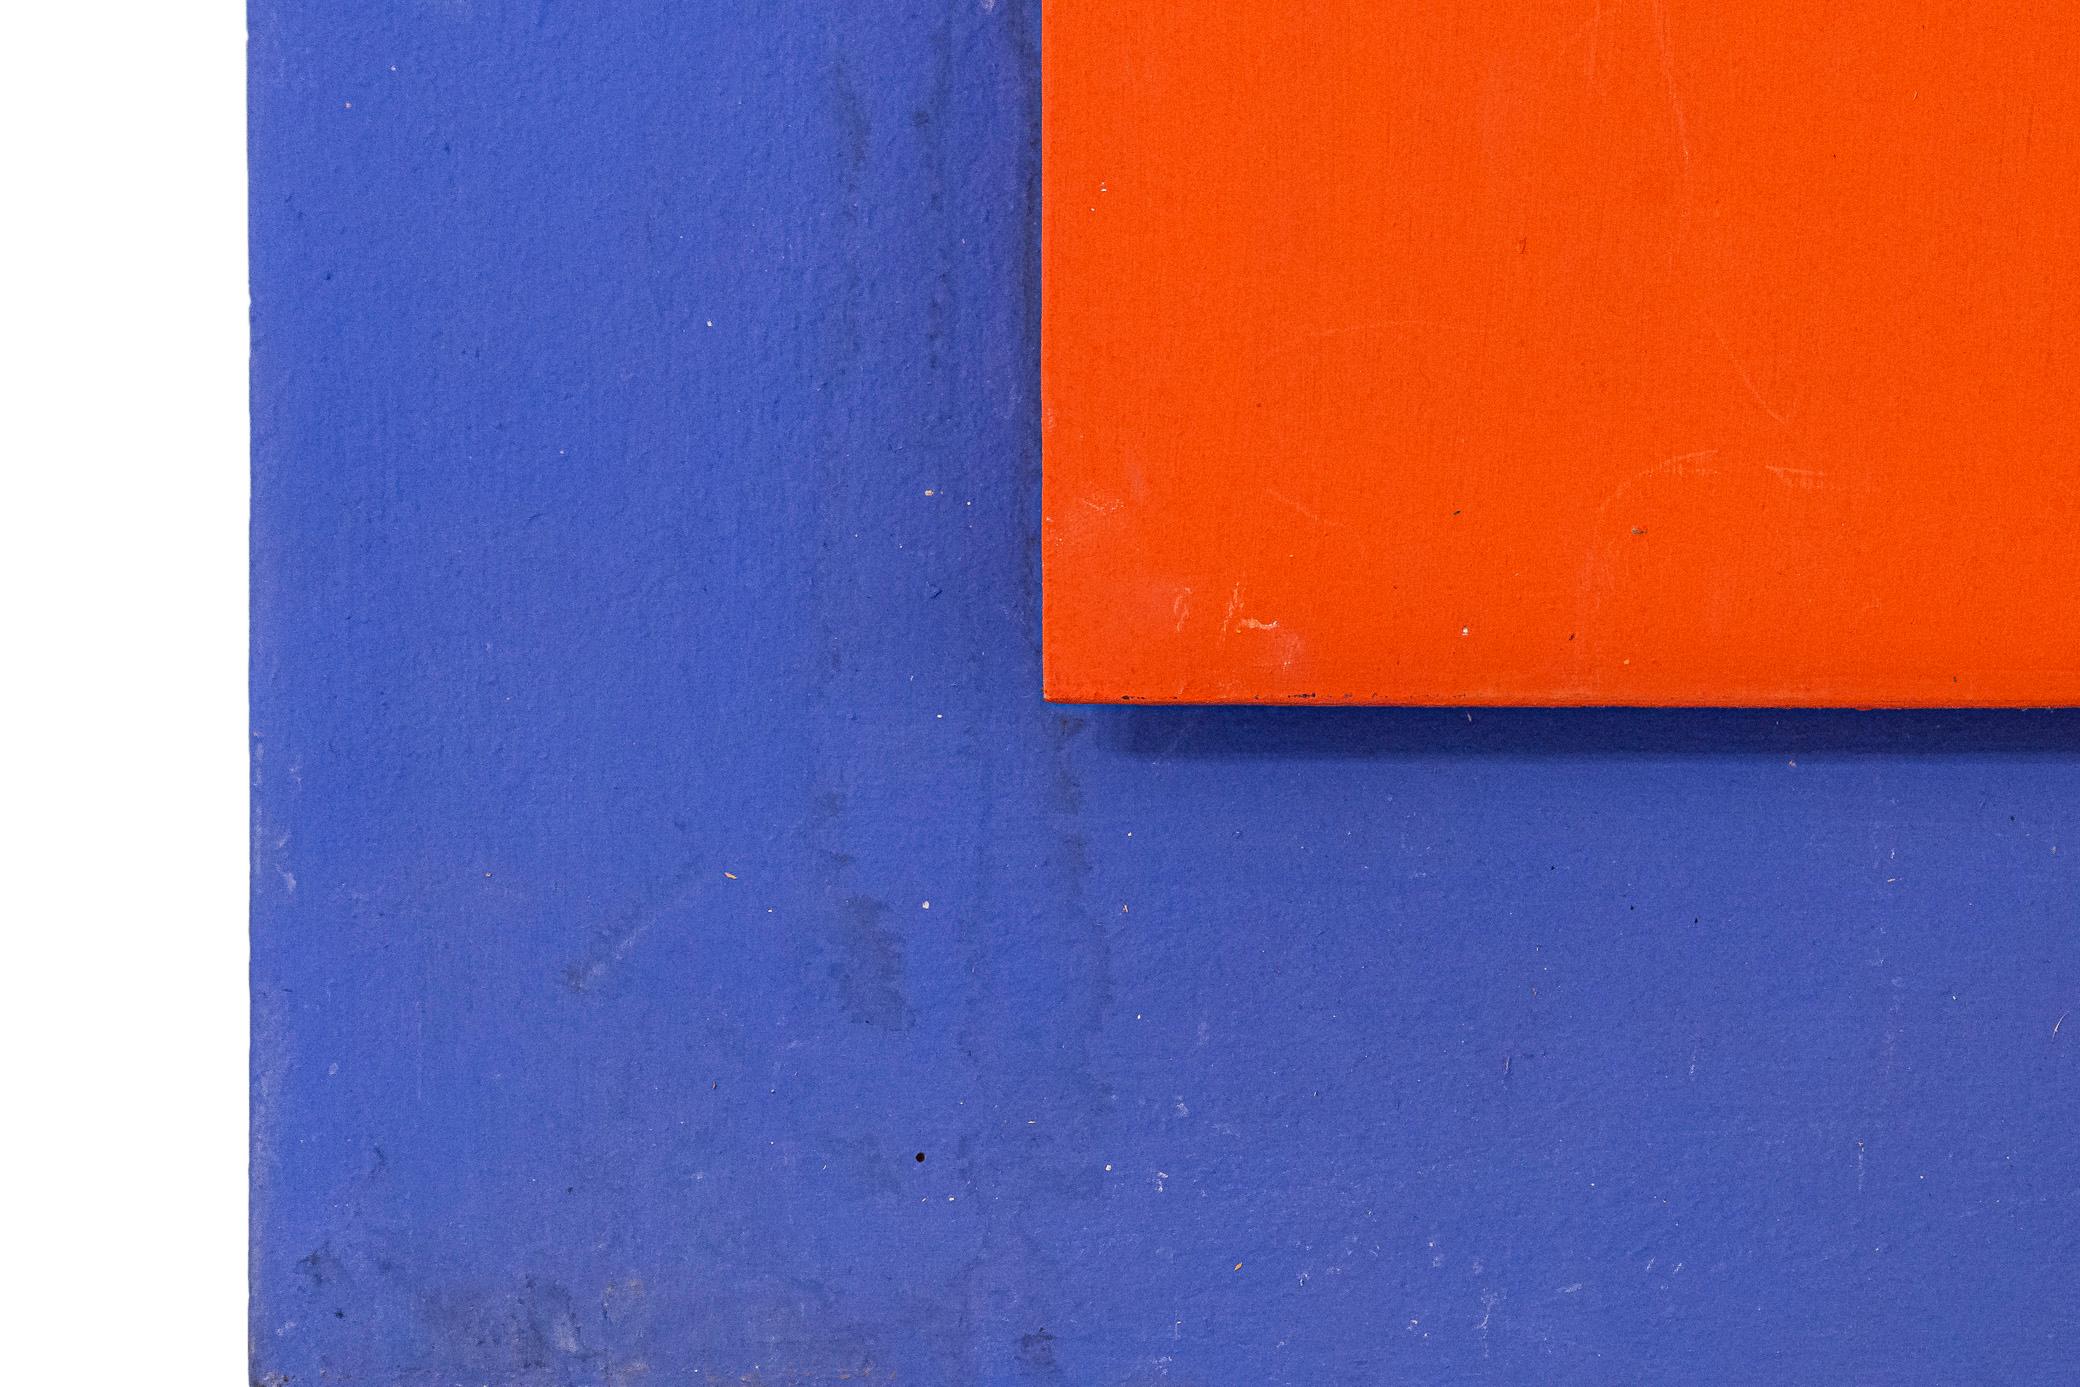 Albert Chubac, 
Malen auf Holz,
Geometrische Komposition, 
Signiert und datiert auf der Rückseite,
Frankreich, 1985.

Maße: 120 x 80 cm.

Albert Chubac wurde 1920 in Genf geboren. Nach einem Studium der dekorativen Kunst, dann an den